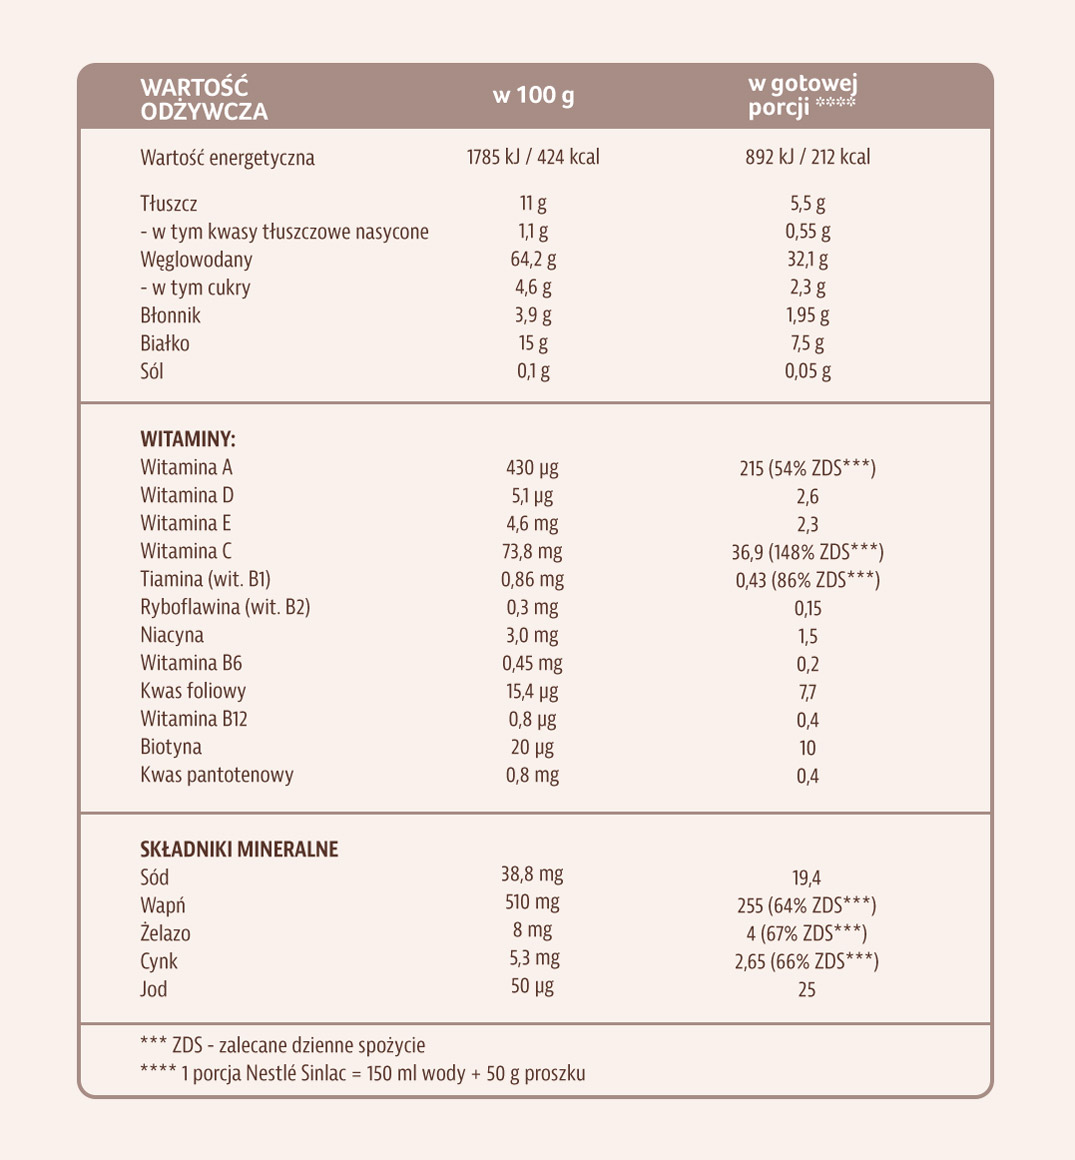 Nestlé Sinlac bez dodatku cukru - tabela wartości odżywczych